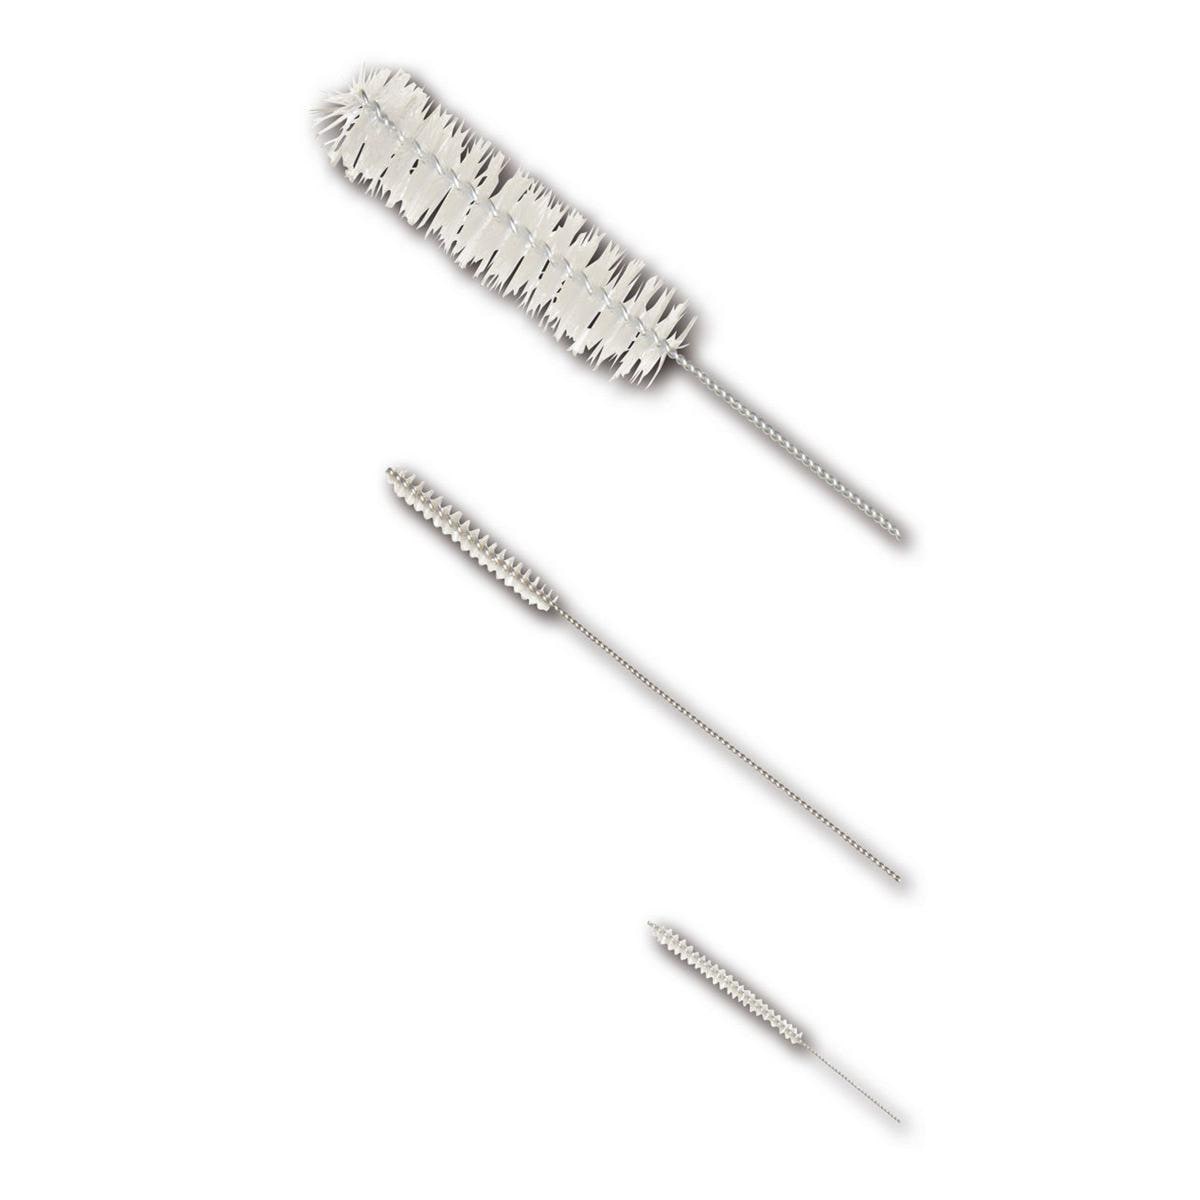 Jiffy Brushes - X-Mini, Länge 15 cm, Ø 3 mm, Packung 12 Stück